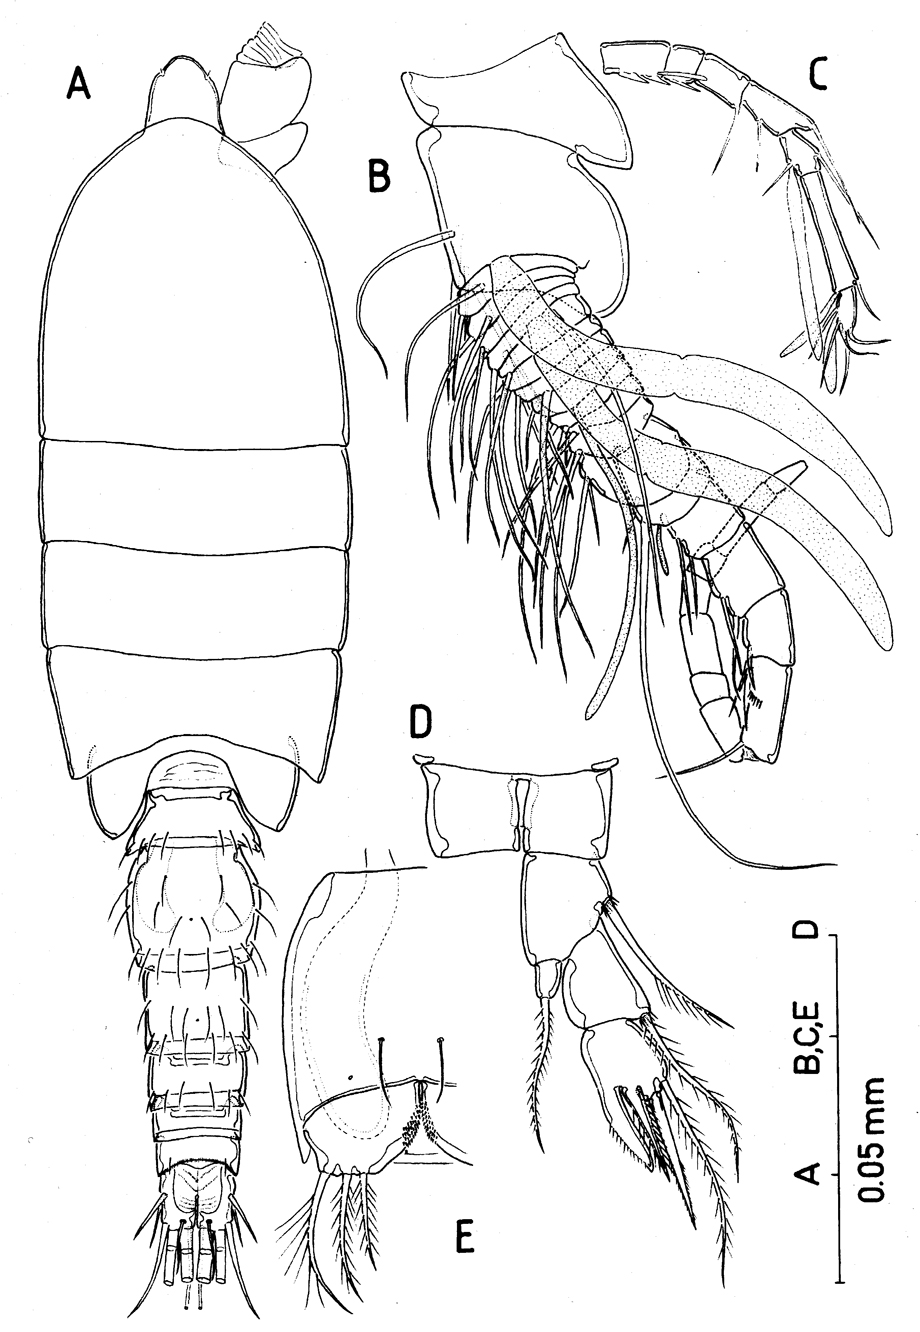 Espce Huysia bahamensis - Planche 6 de figures morphologiques